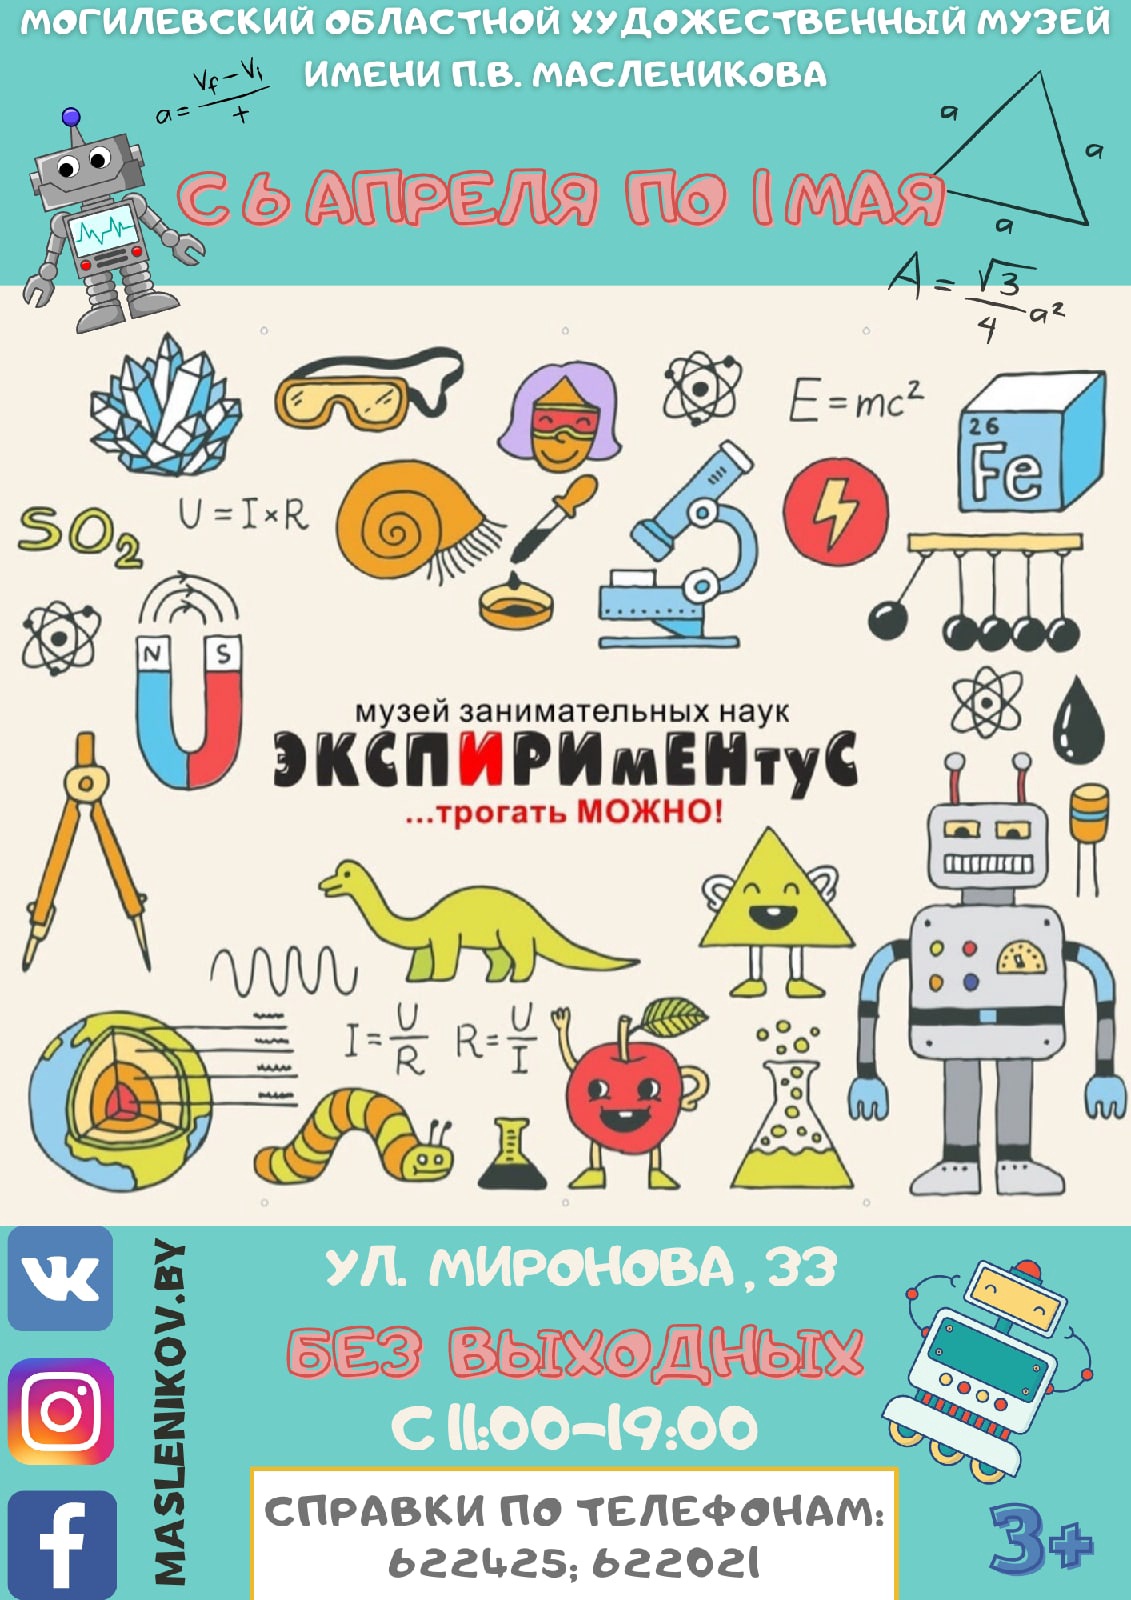 Интерактивная выставка «ЭКСПИРИмЕНтУС» начинает работу в Могилеве с 6 апреля